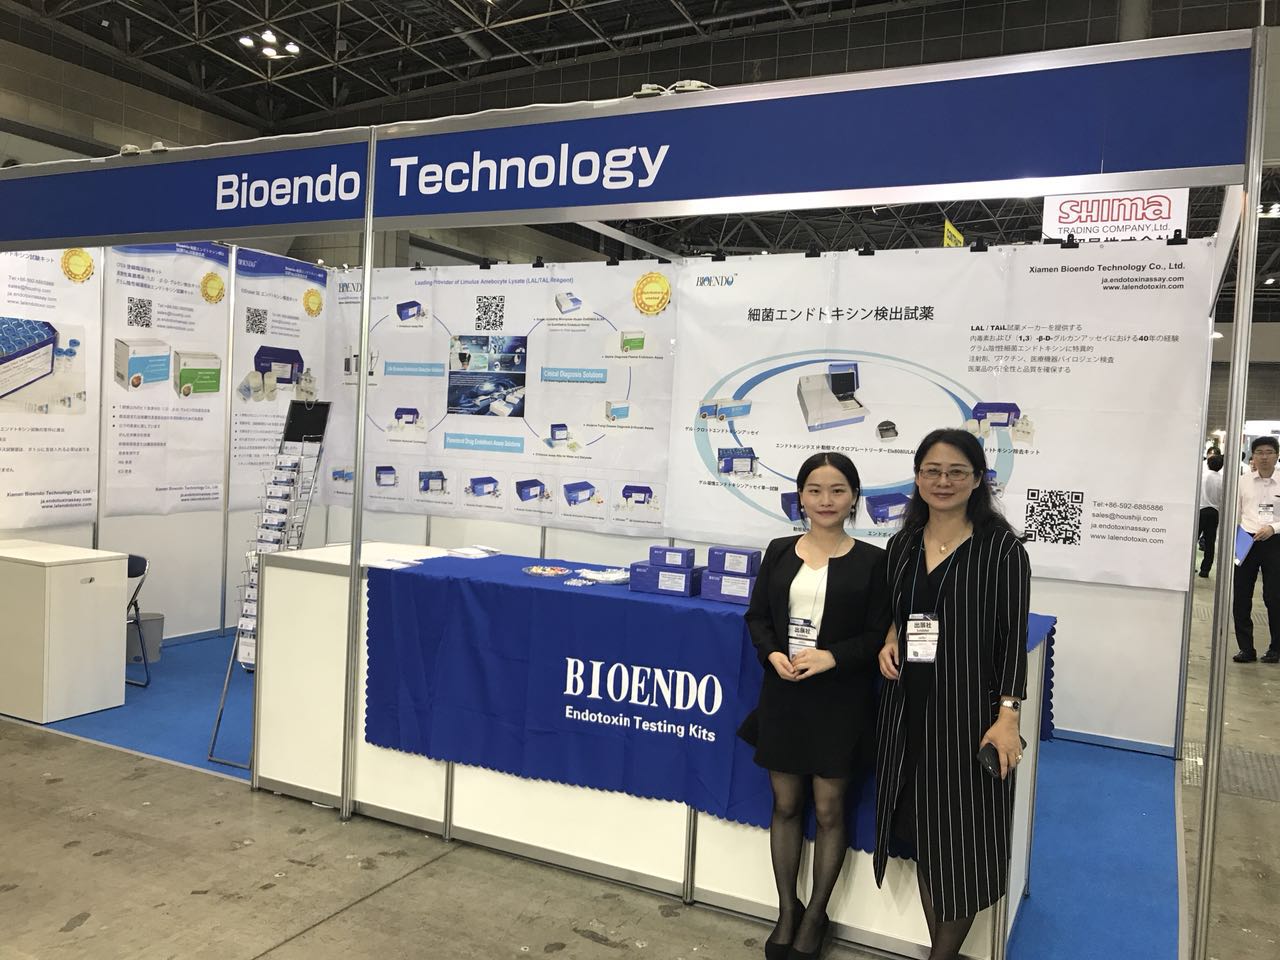 Bioendo در PHARMA ژاپن، 27-29 ژوئن 2018 شرکت کرد